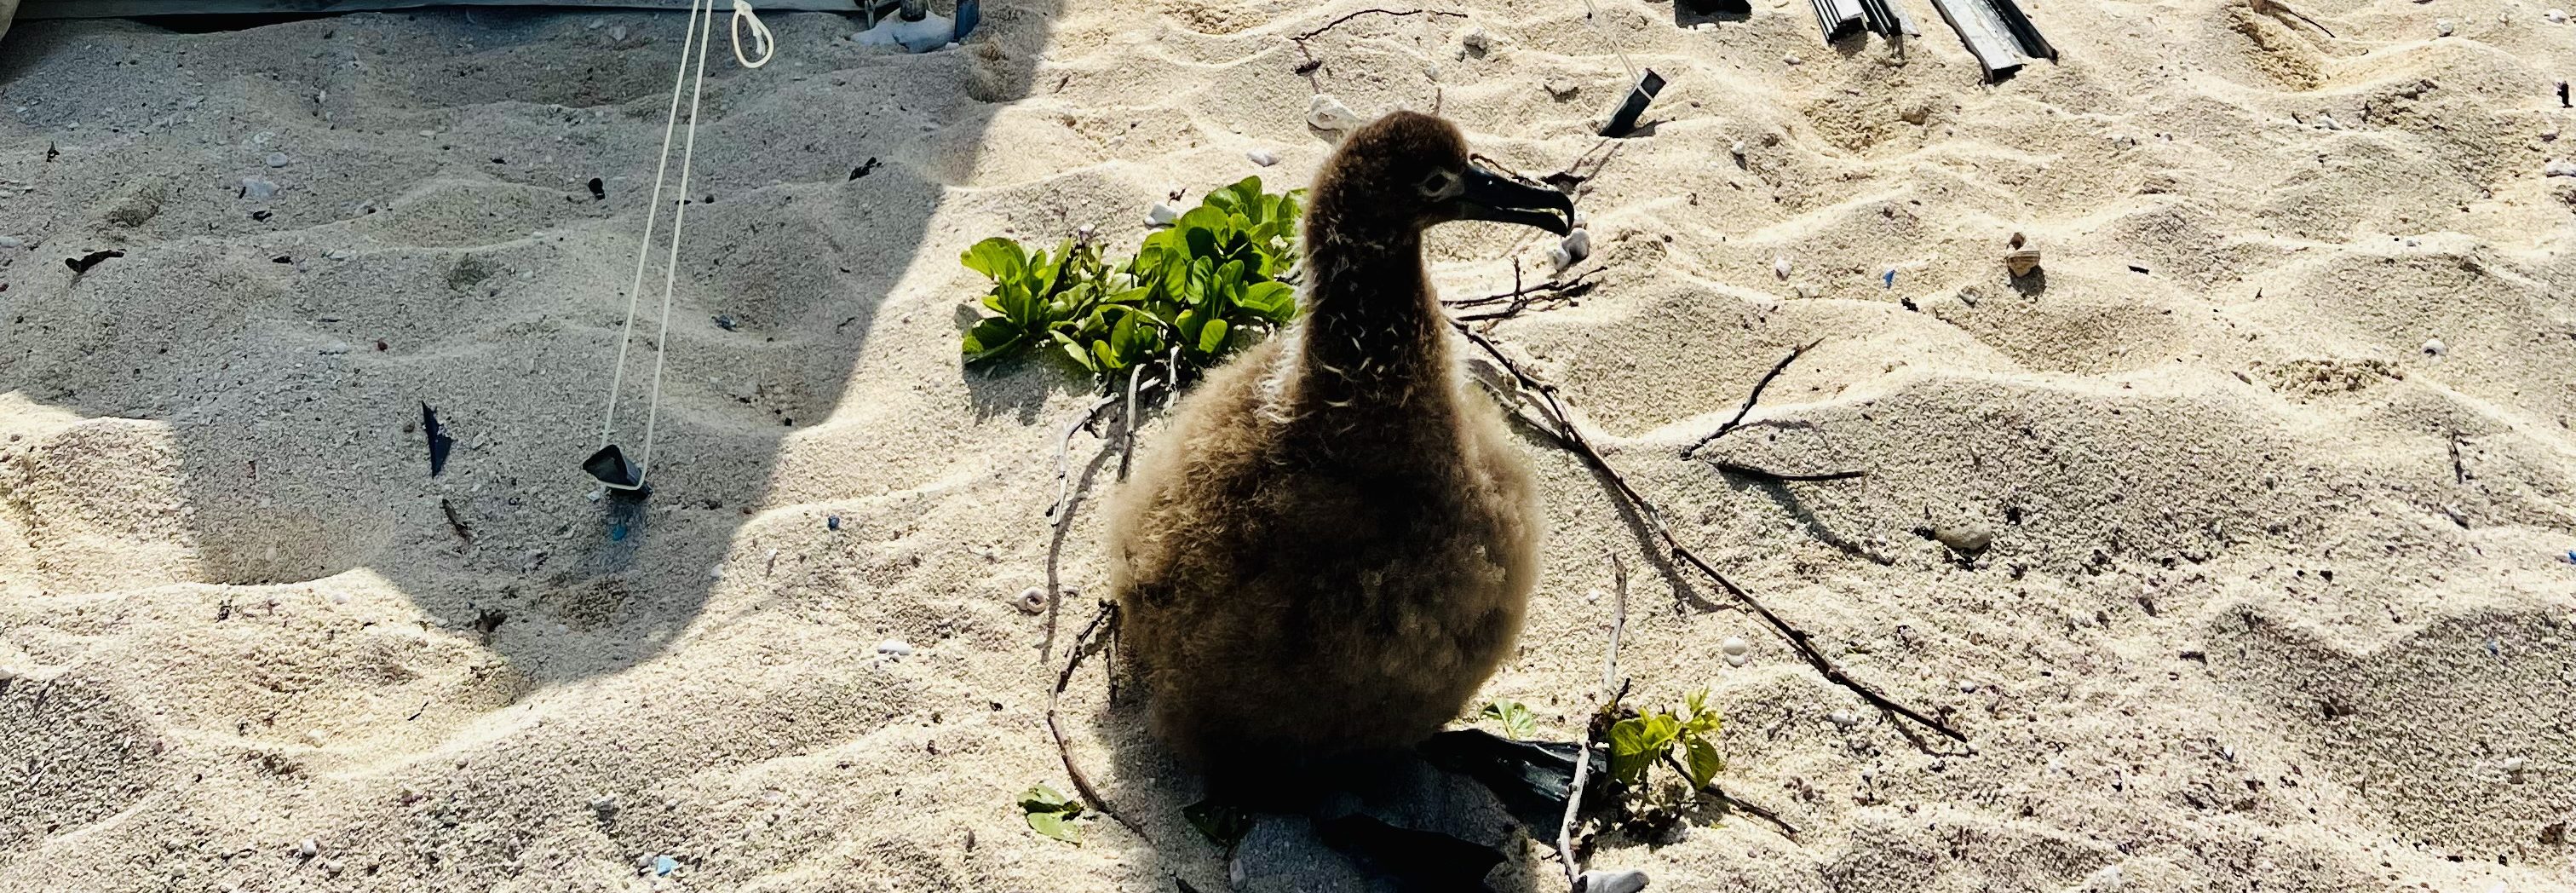 A fluffy bird on the sand